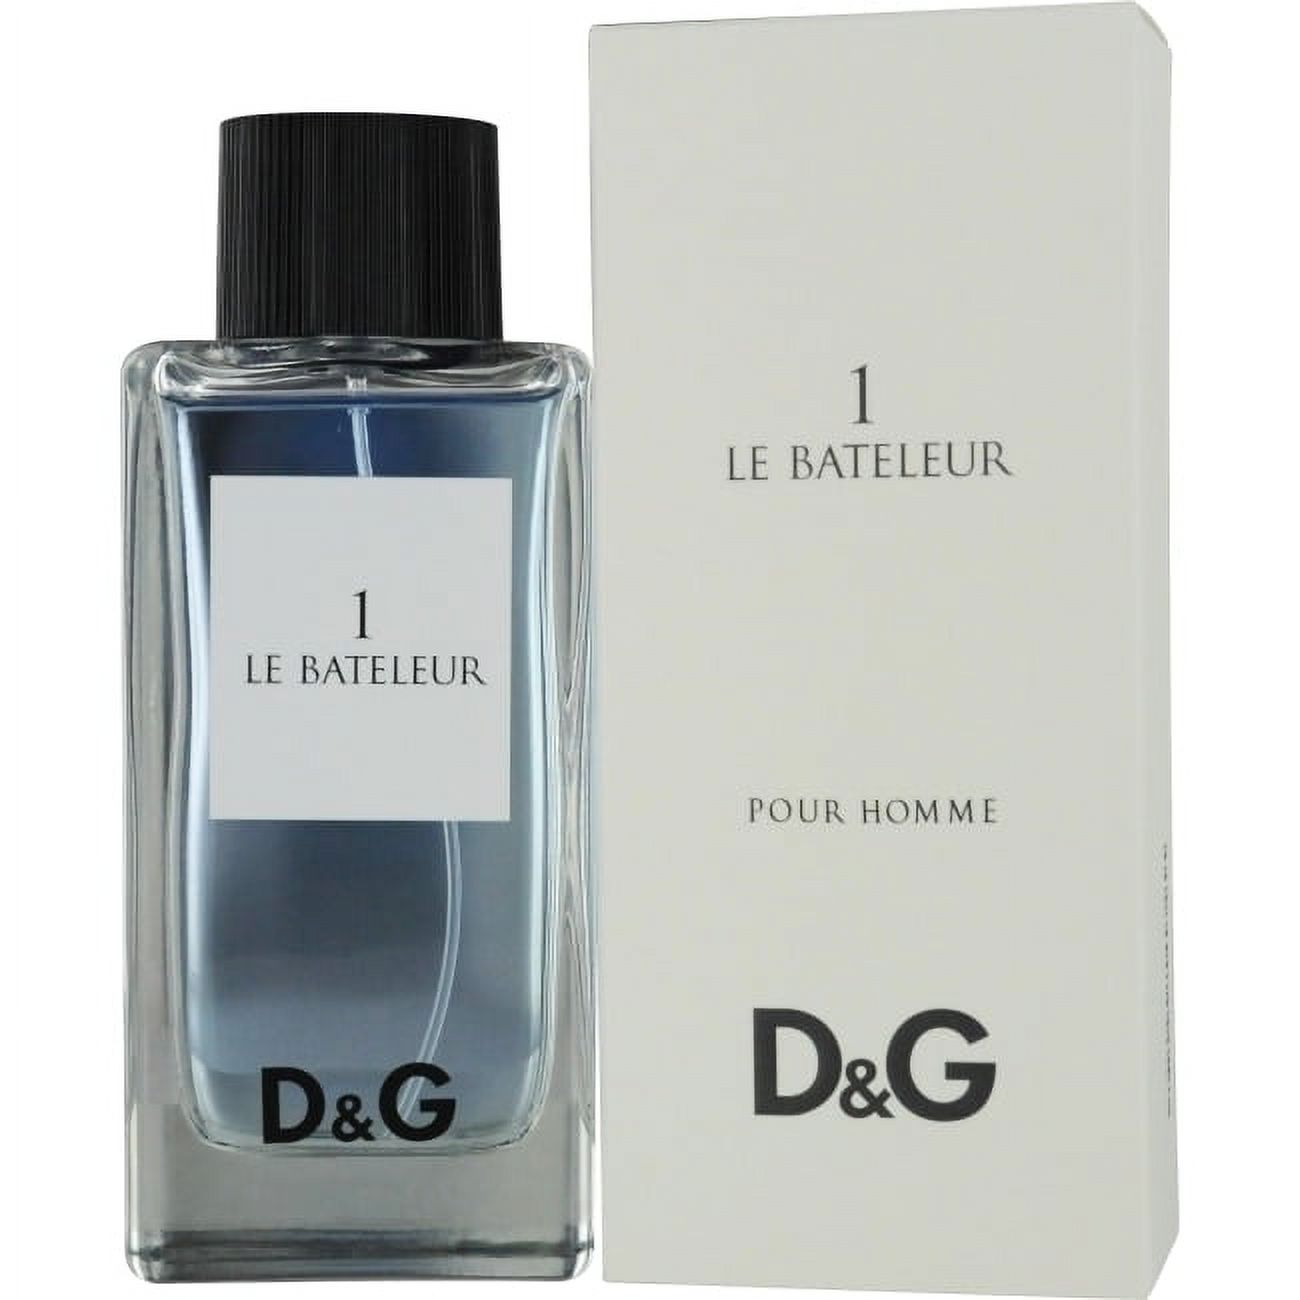 D & G 1 Le Bateleur Eau De Toilette Spray 3.3 Oz / 100 Ml for Men by Dolce & Gabbana - image 2 of 2